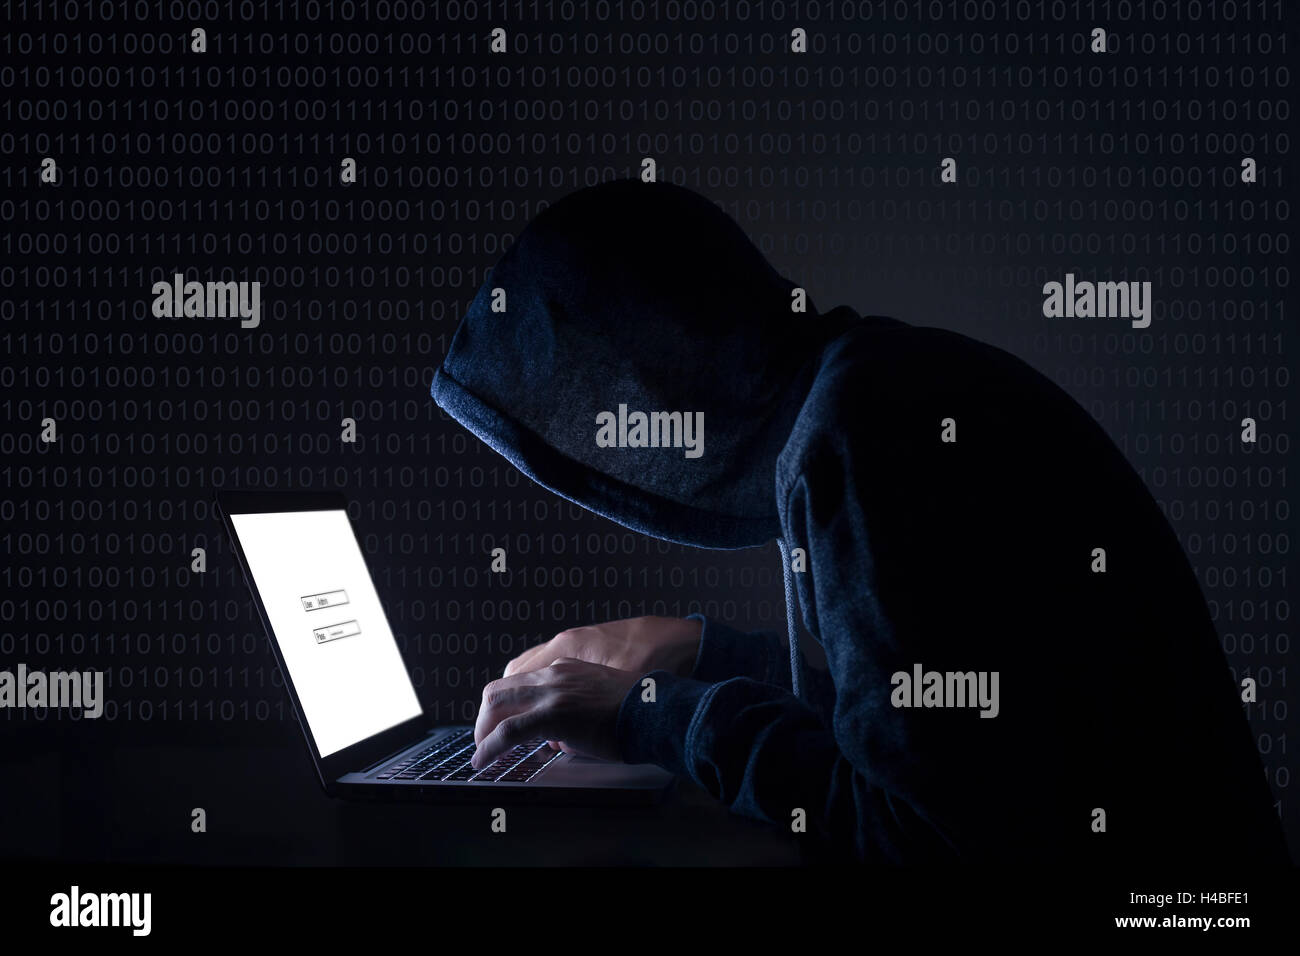 Hacker avec coffre de lancer une attaque cybernétique Banque D'Images